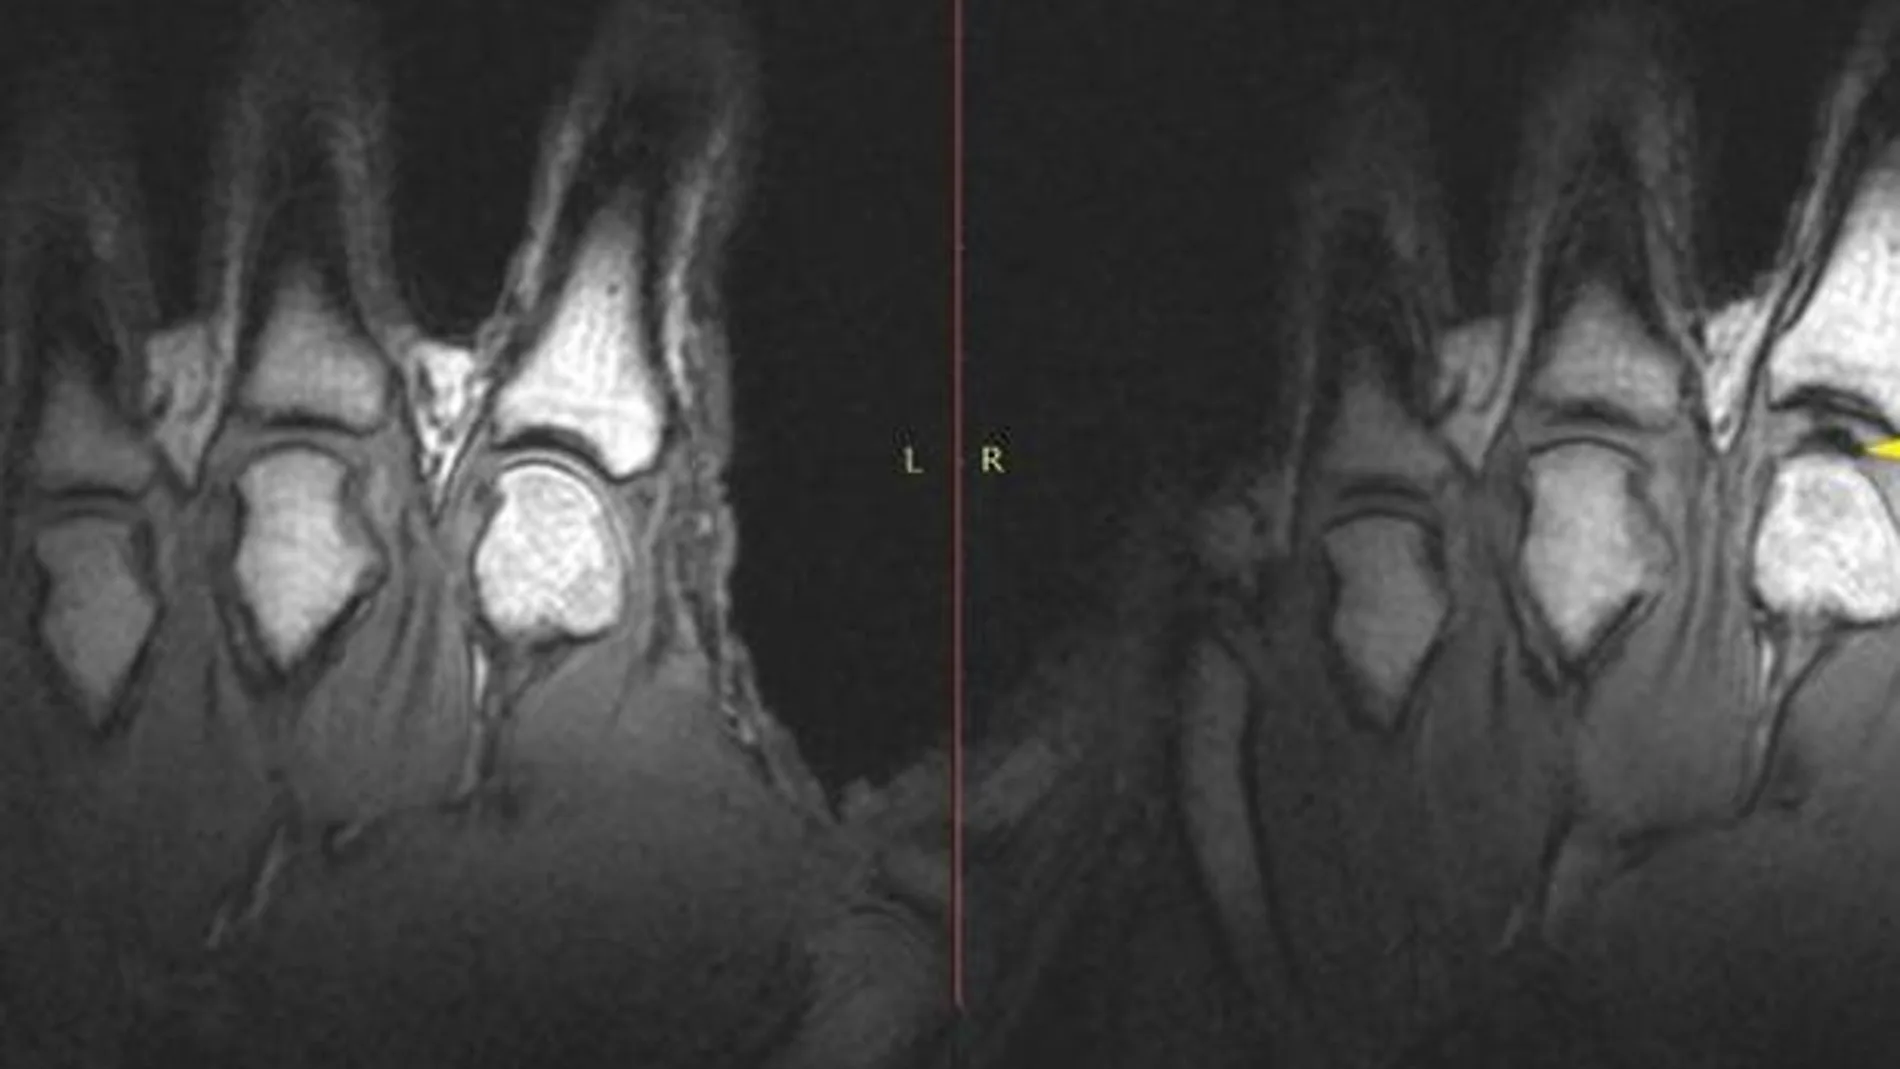 Imagen de la resonancia magnética, en la que se observa que el hueco entre la articulación y el hueso de la mano es mayor en la parte izquierda que en la derecha, como consecuencia del chasquido